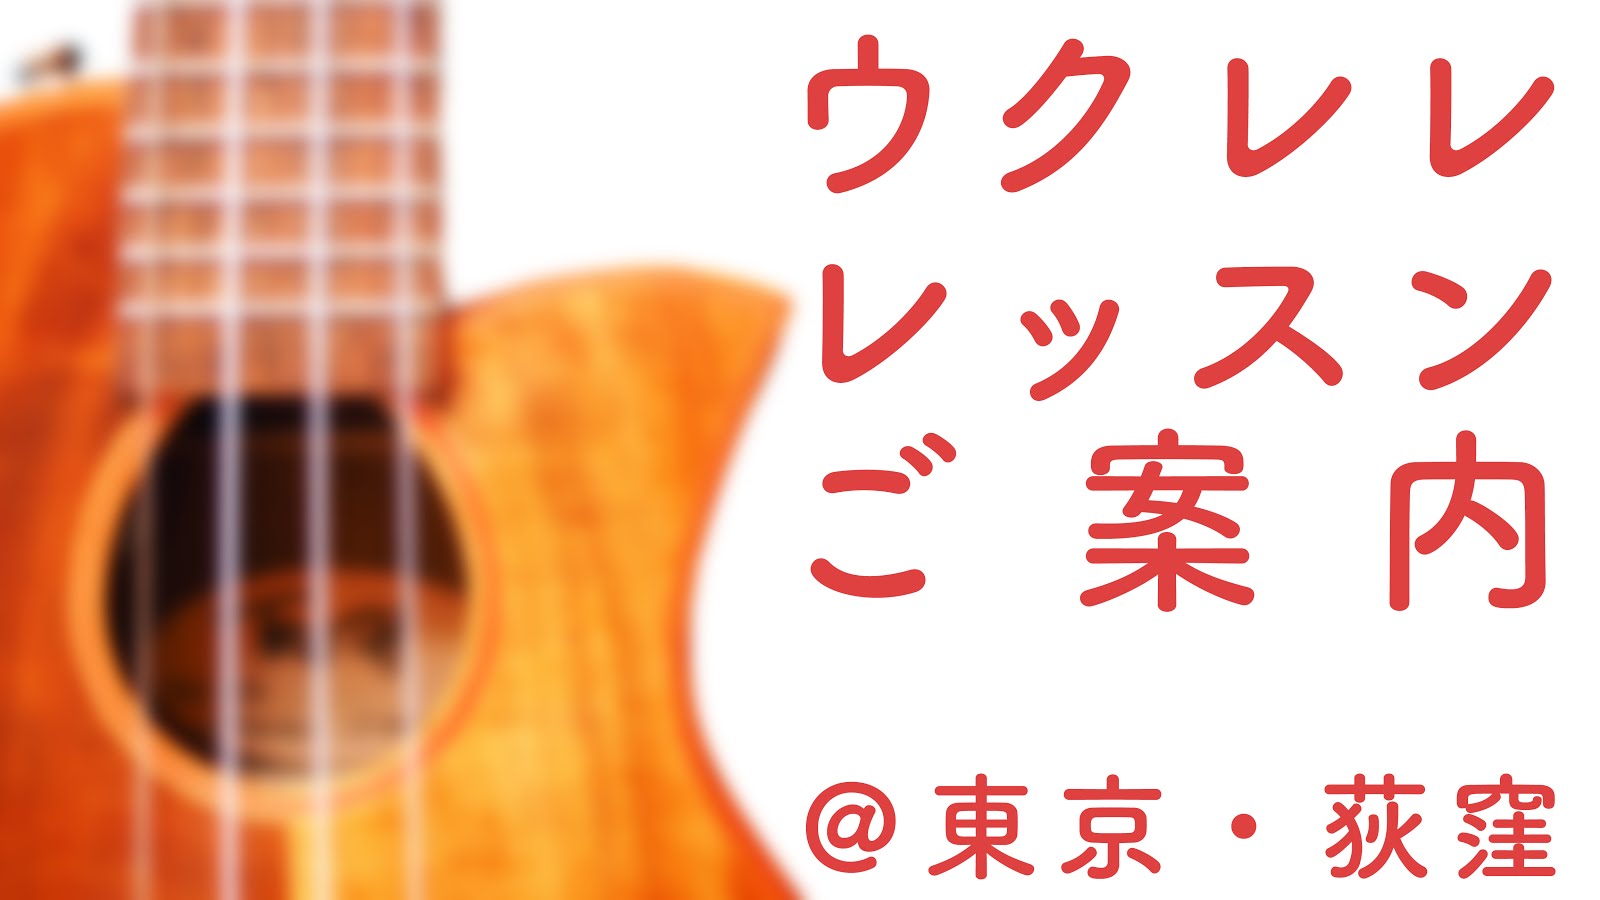 Nao's Guitar Blog : 【無料TAB譜】使い方自由! 白紙のギターTAB譜